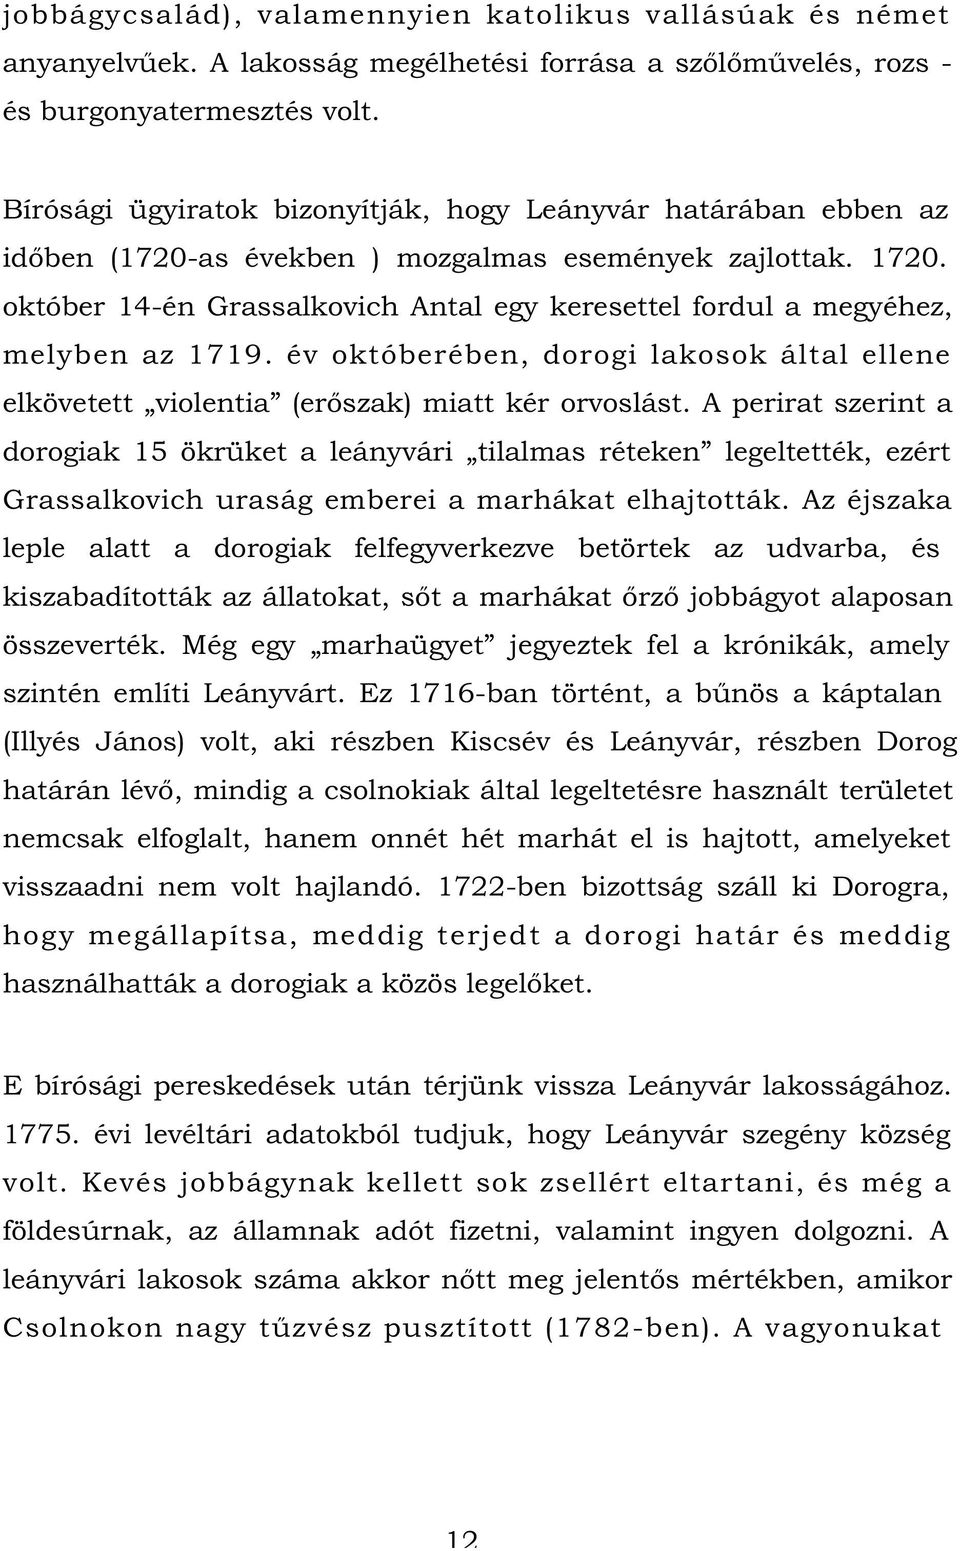 október 14-én Grassalkovich Antal egy keresettel fordul a megyéhez, melyben az 1719. év októberében, dorogi lakosok által ellene elkövetett violentia (erőszak) miatt kér orvoslást.